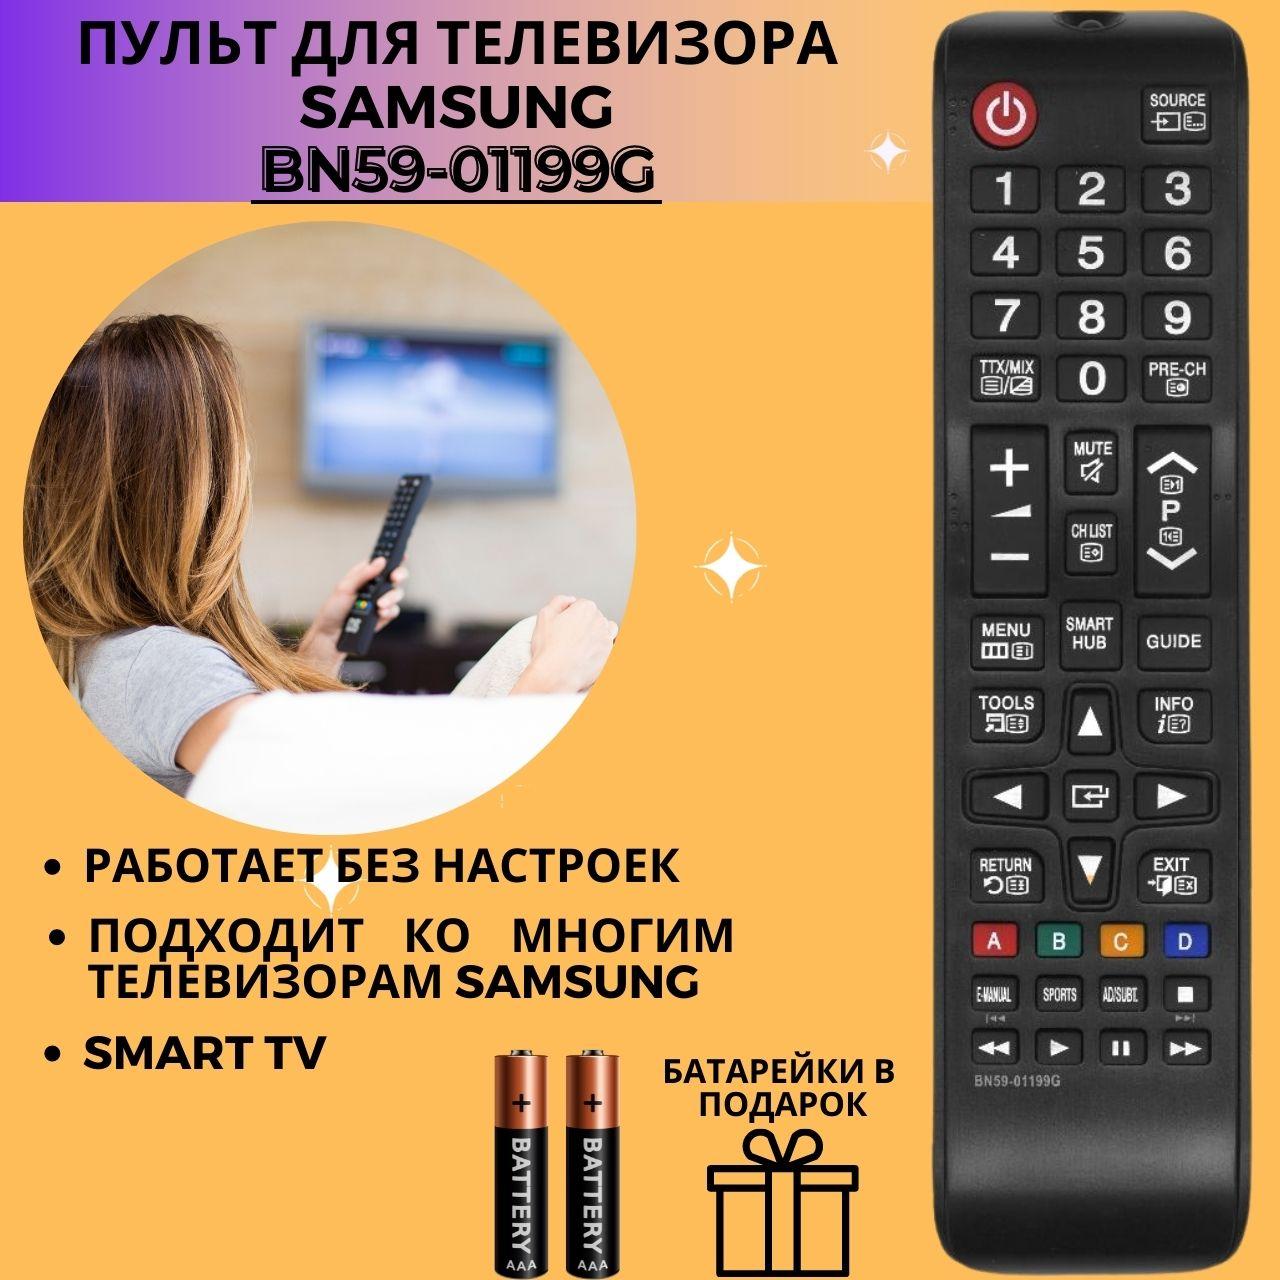 Пульт телевизионный Samsung BN59-01199G ic с кнопкой функции smart tv